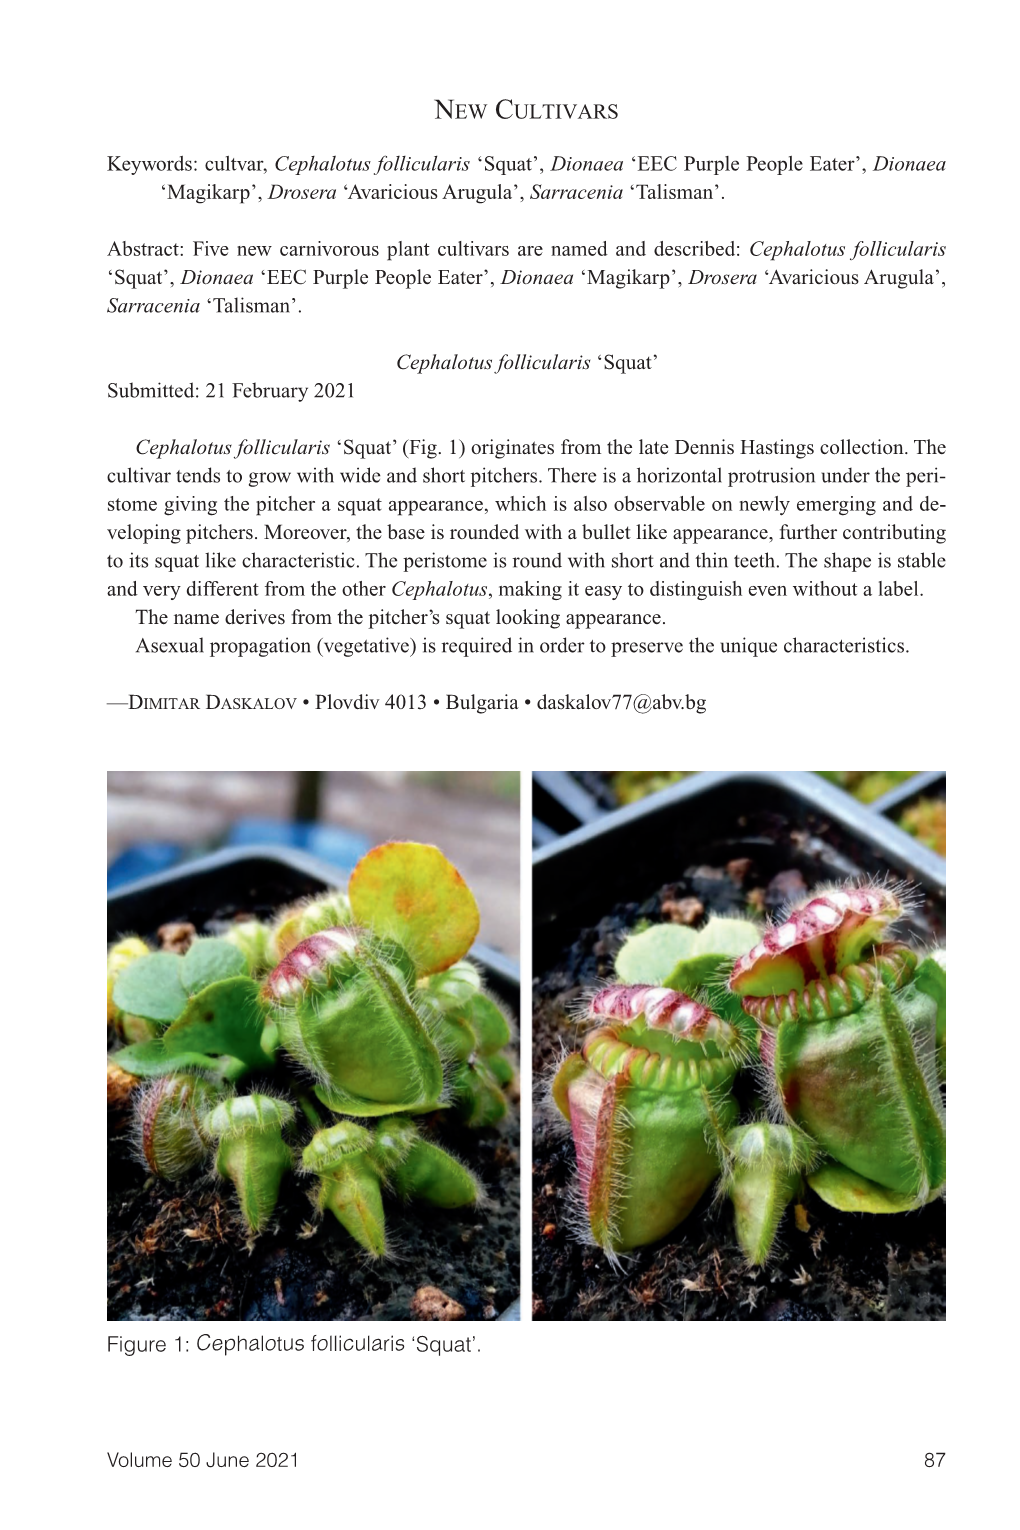 Carnivorous Plant Newsletter V50 N2, June 2021